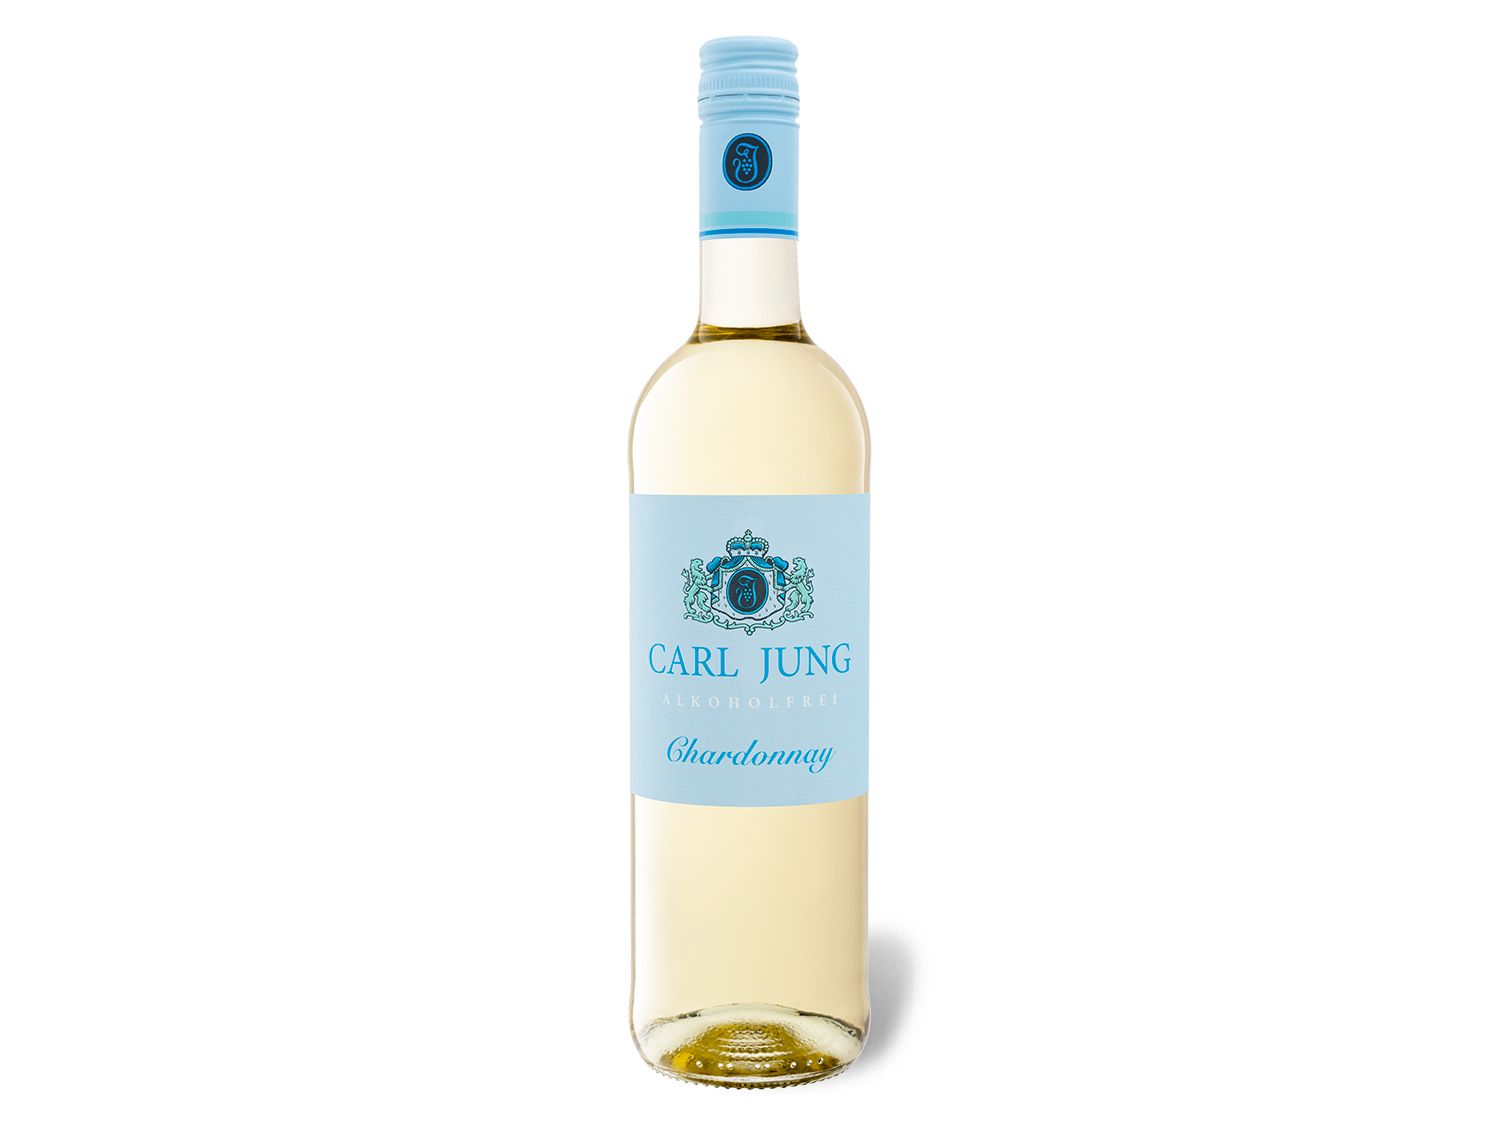 Carl Jung Chardonnay vegan, entalkoholisierter Weißwein